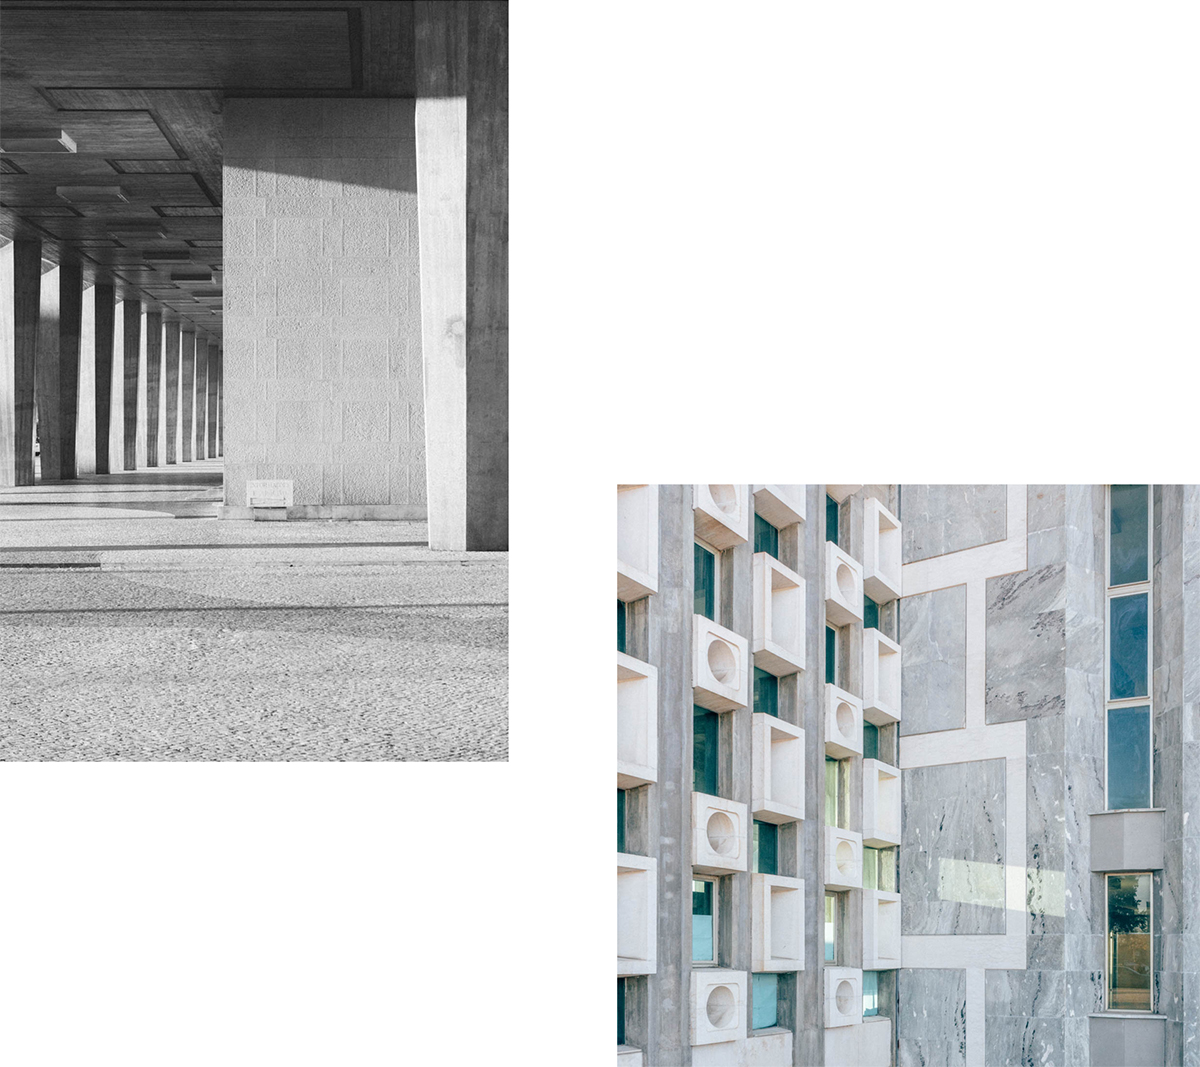 FRAGMENTS_ brutalism in Lisbon - Hannelore Veelaert for au pays des merveilles